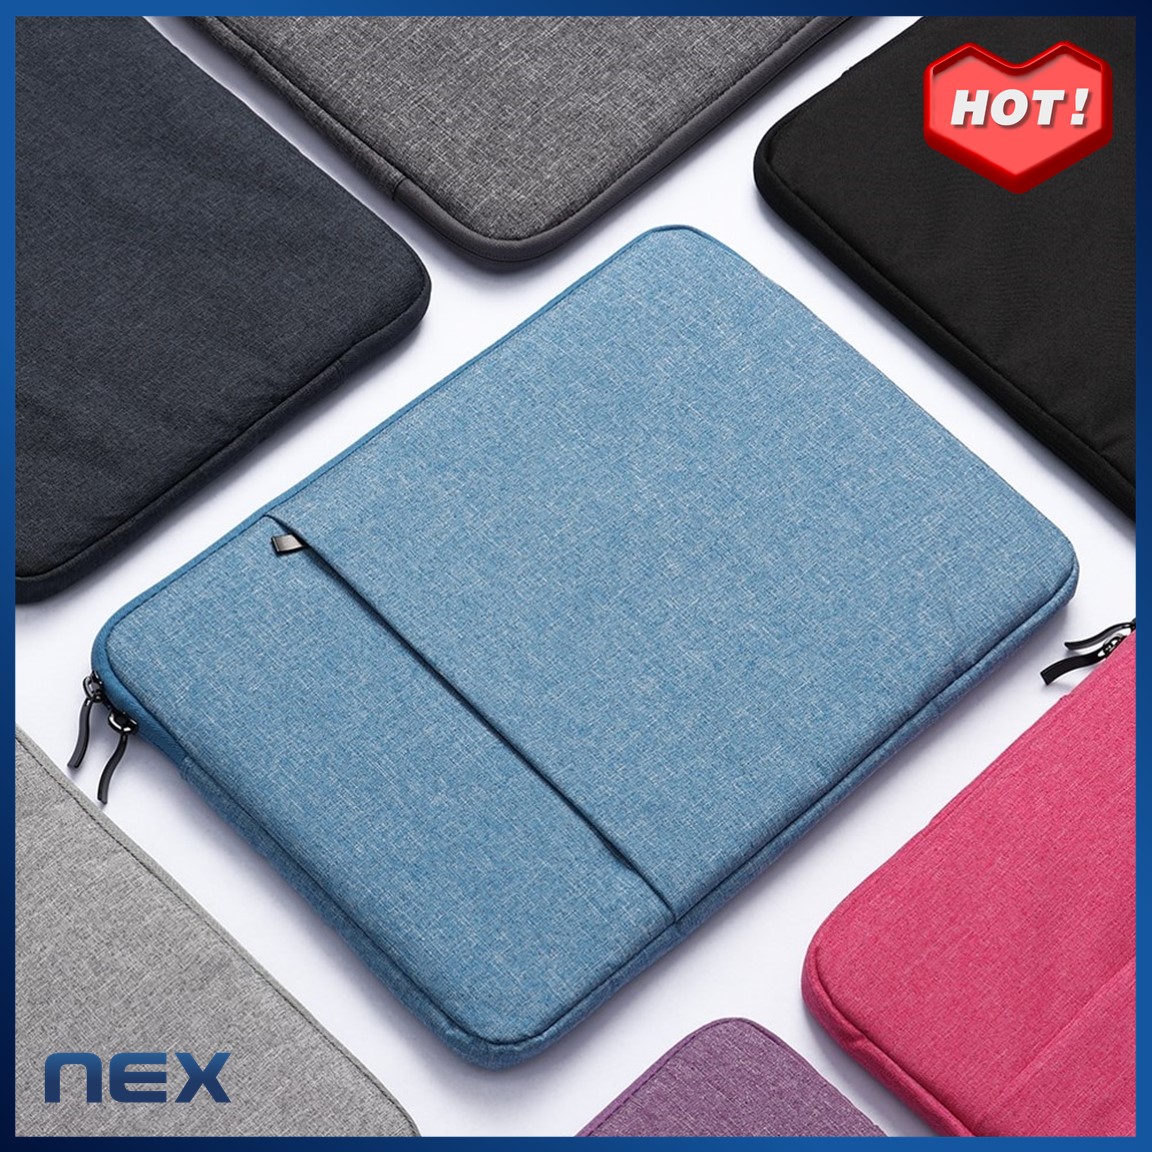 NEX กระเป๋าโน๊ตบุ๊ค soft case เคสโน๊ตบุ๊ค 10  11  13.3  14  15.6 นิ้ว  เคสMacbook Air Pro   ซองแล็ปท็อป ซองใส่ไอแพด ซองผ้าใส่แท็บเล็ต Laptop Bag Macbook Case